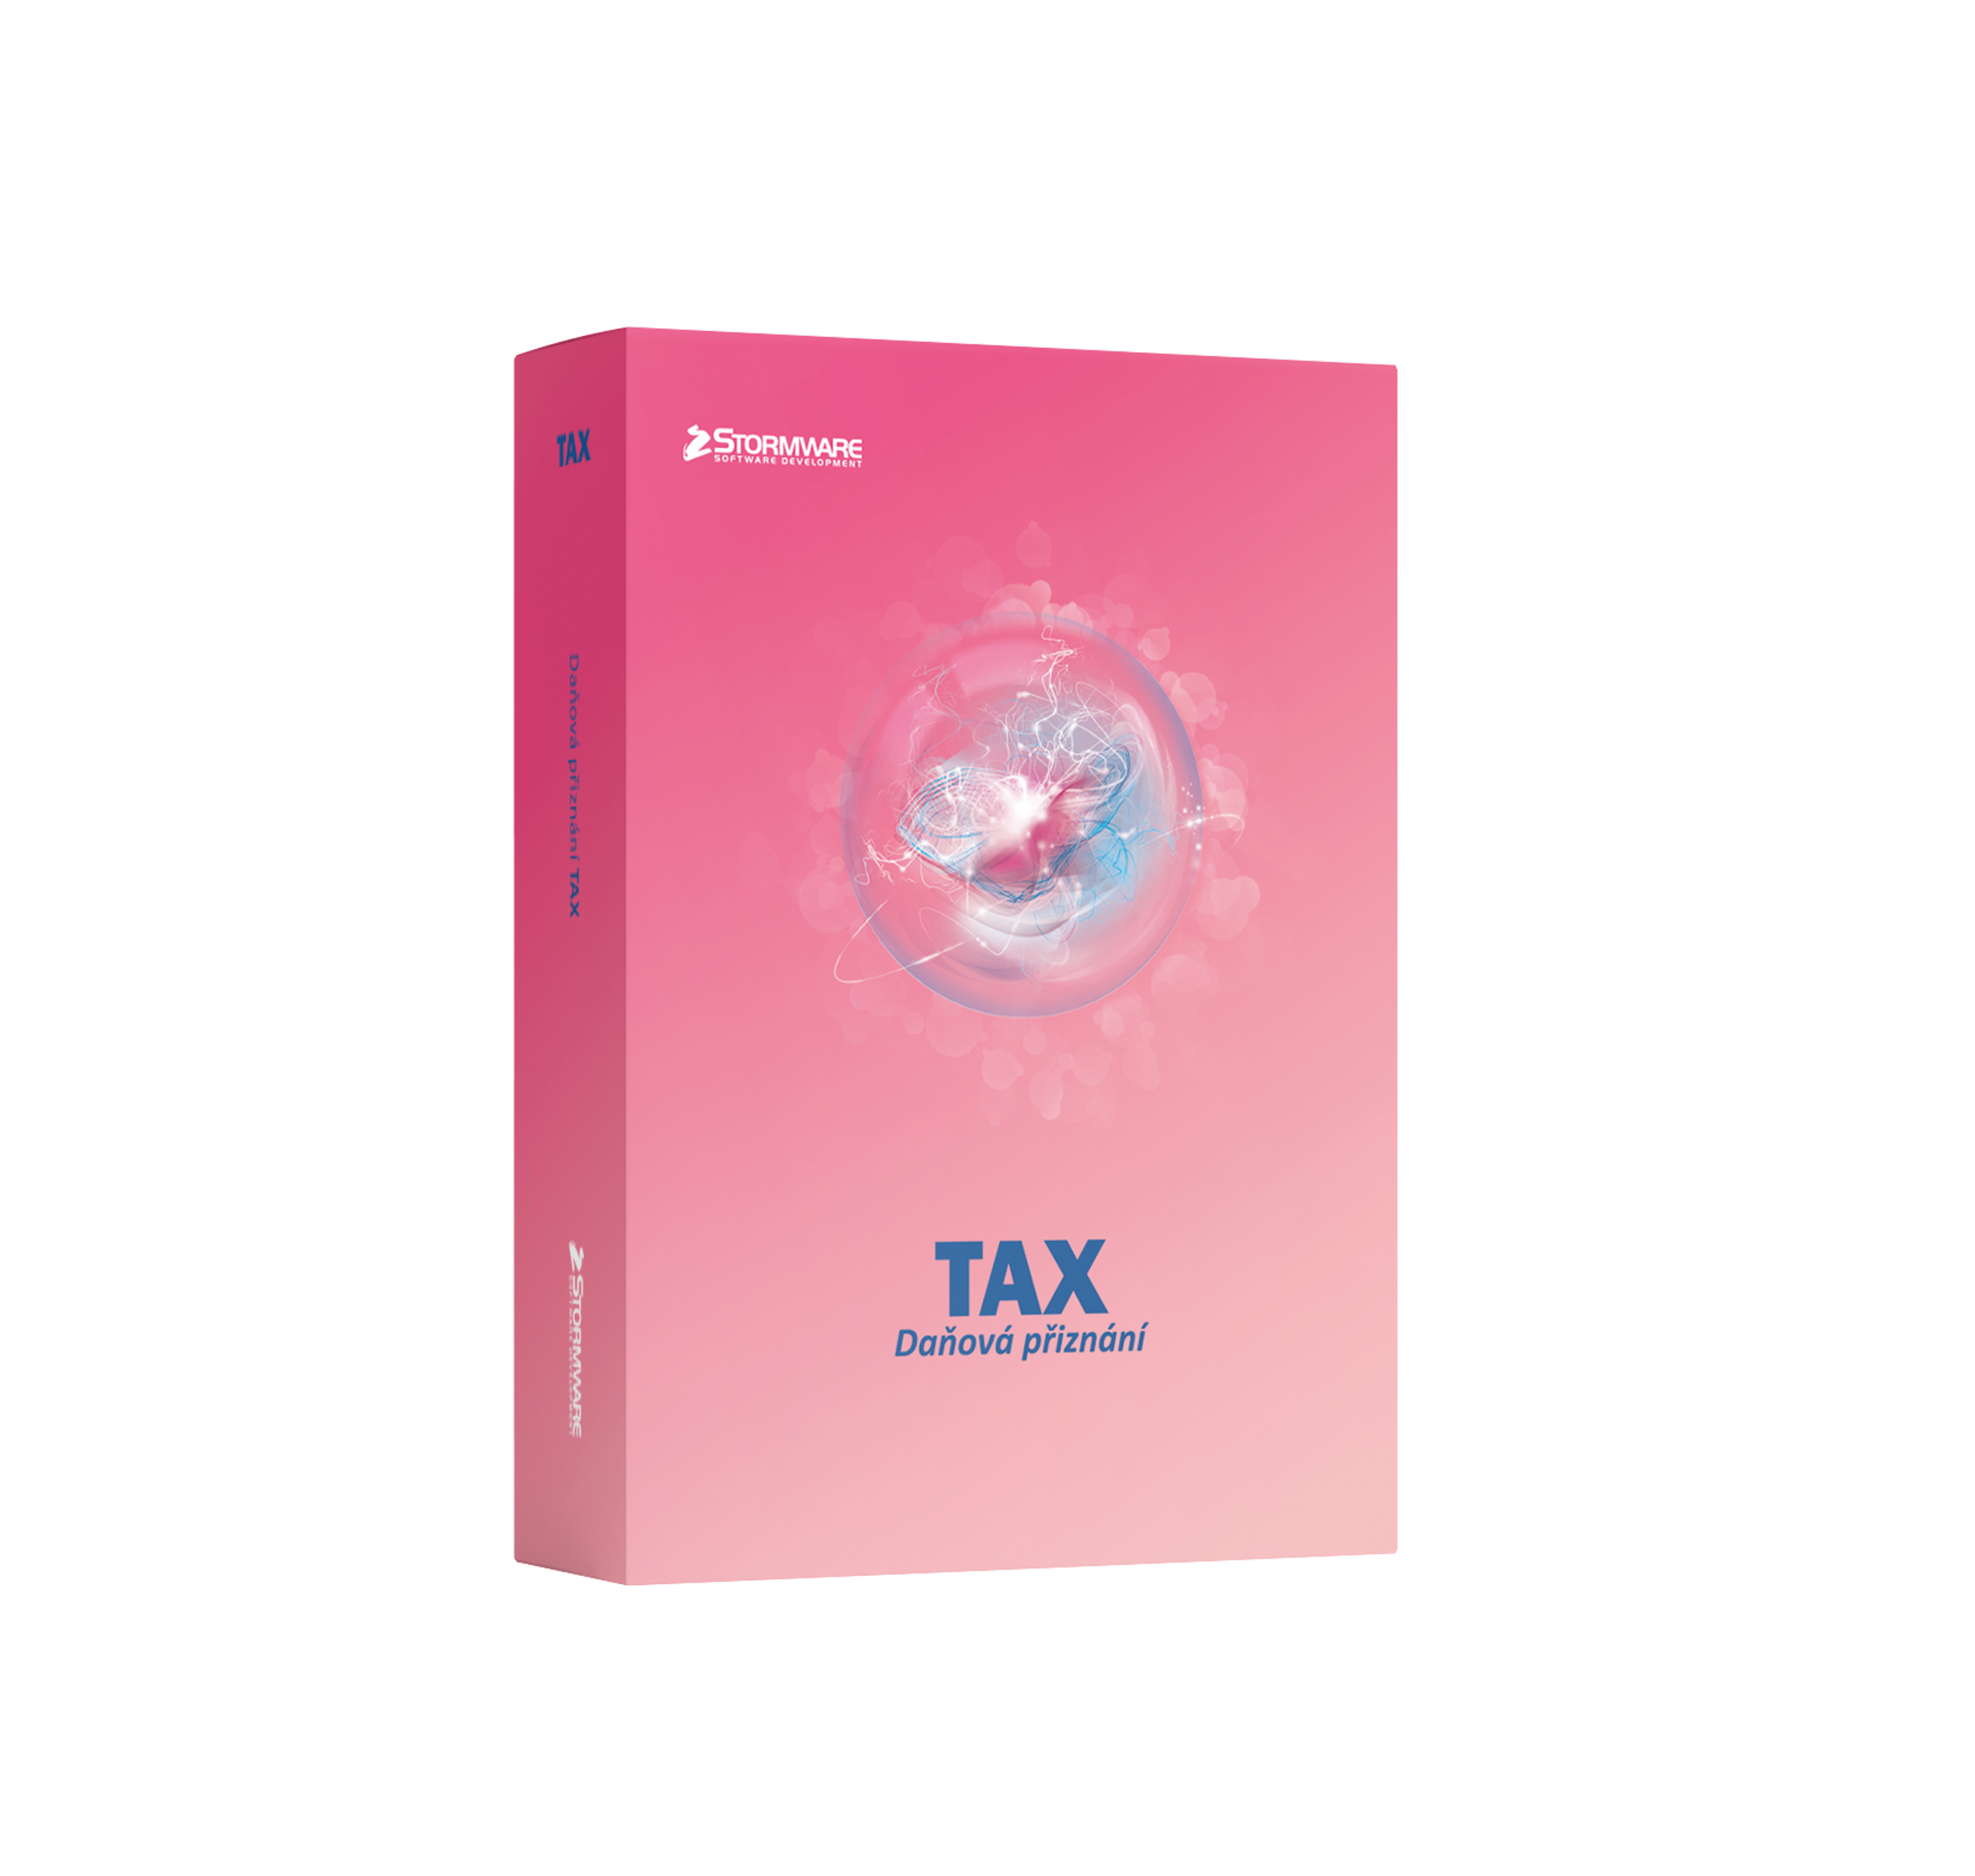 TAX - daňové přiznání